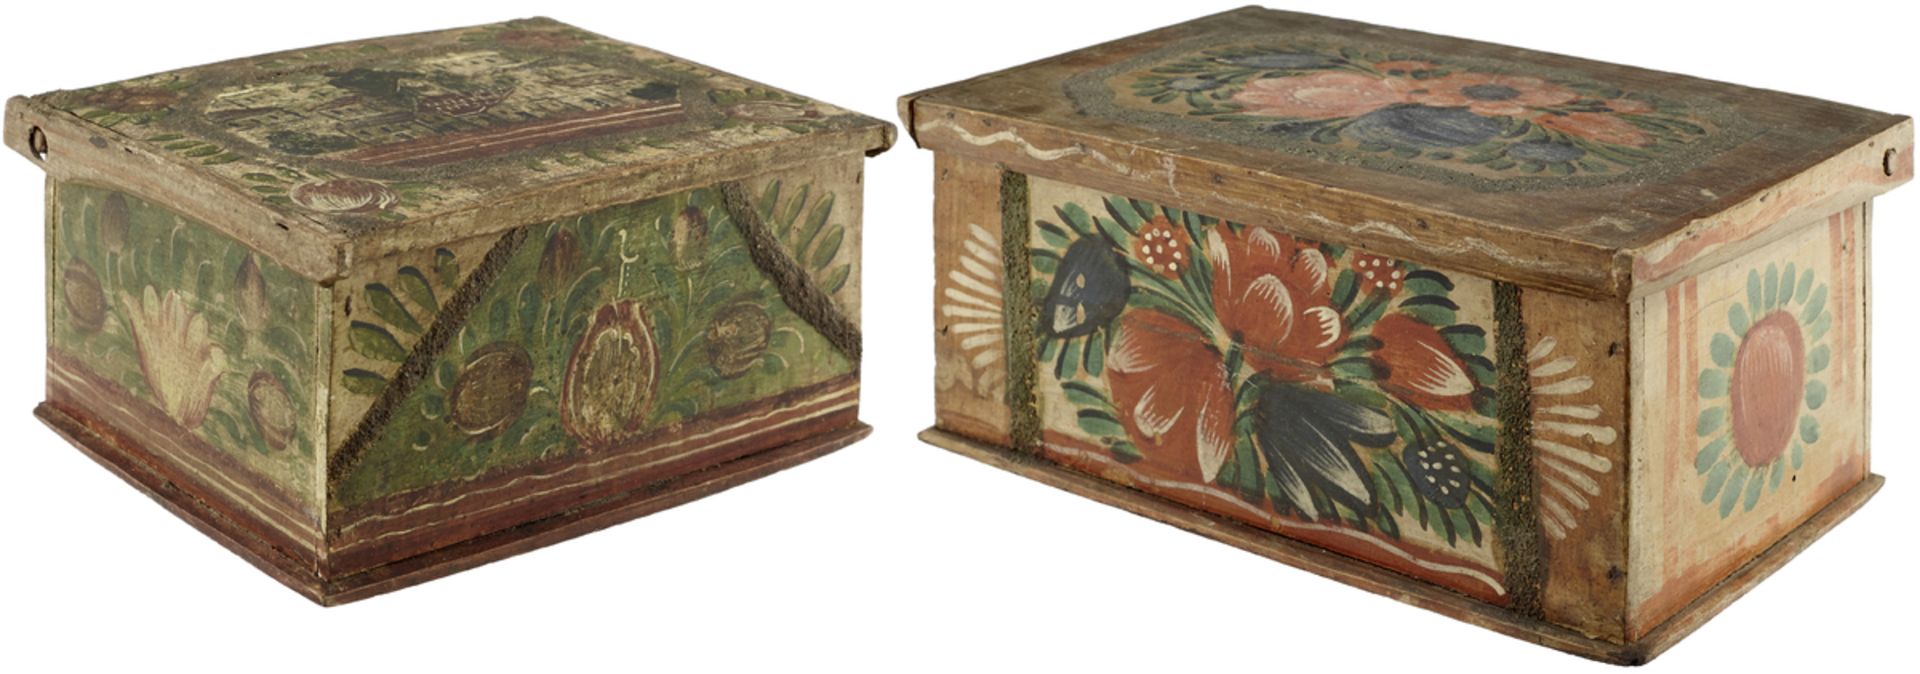 2 SchatullenUm 1800. Buchenholz. Polychrome, stilisierte Floralmalerei und Sandbänder. Ein Deckel